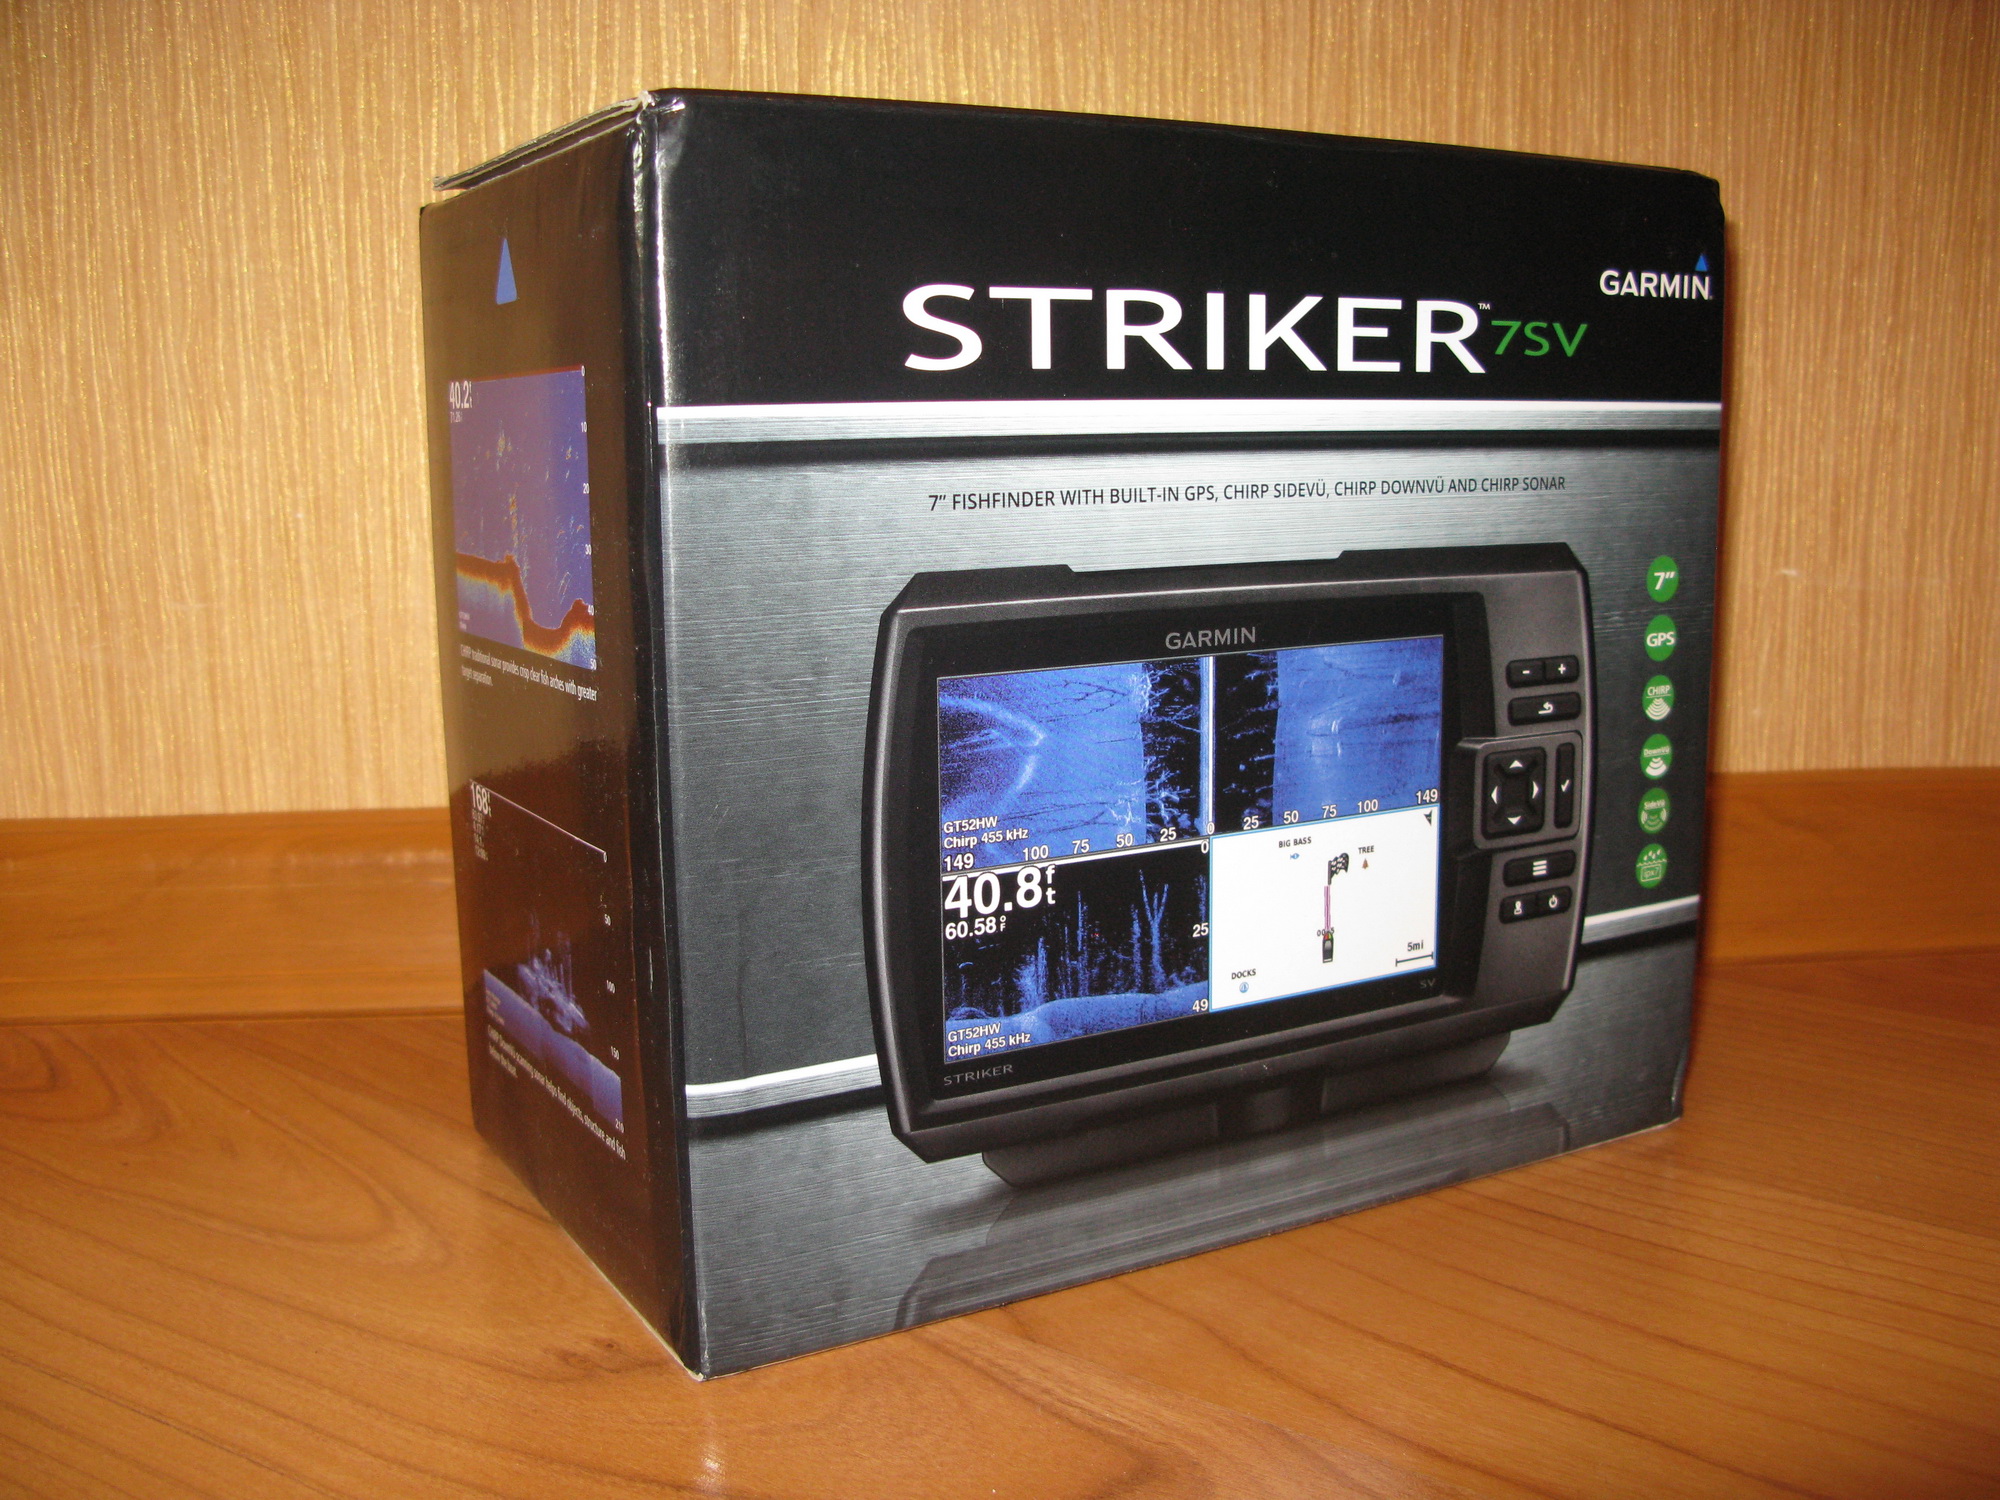 Страйкер 7 плюс. Гармин Страйкер 7св. Garmin Striker Plus SV 7 коробка. Гармин Страйкер вивид 7sv коробка. Гармин Страйкер 7sv размер упаковки.